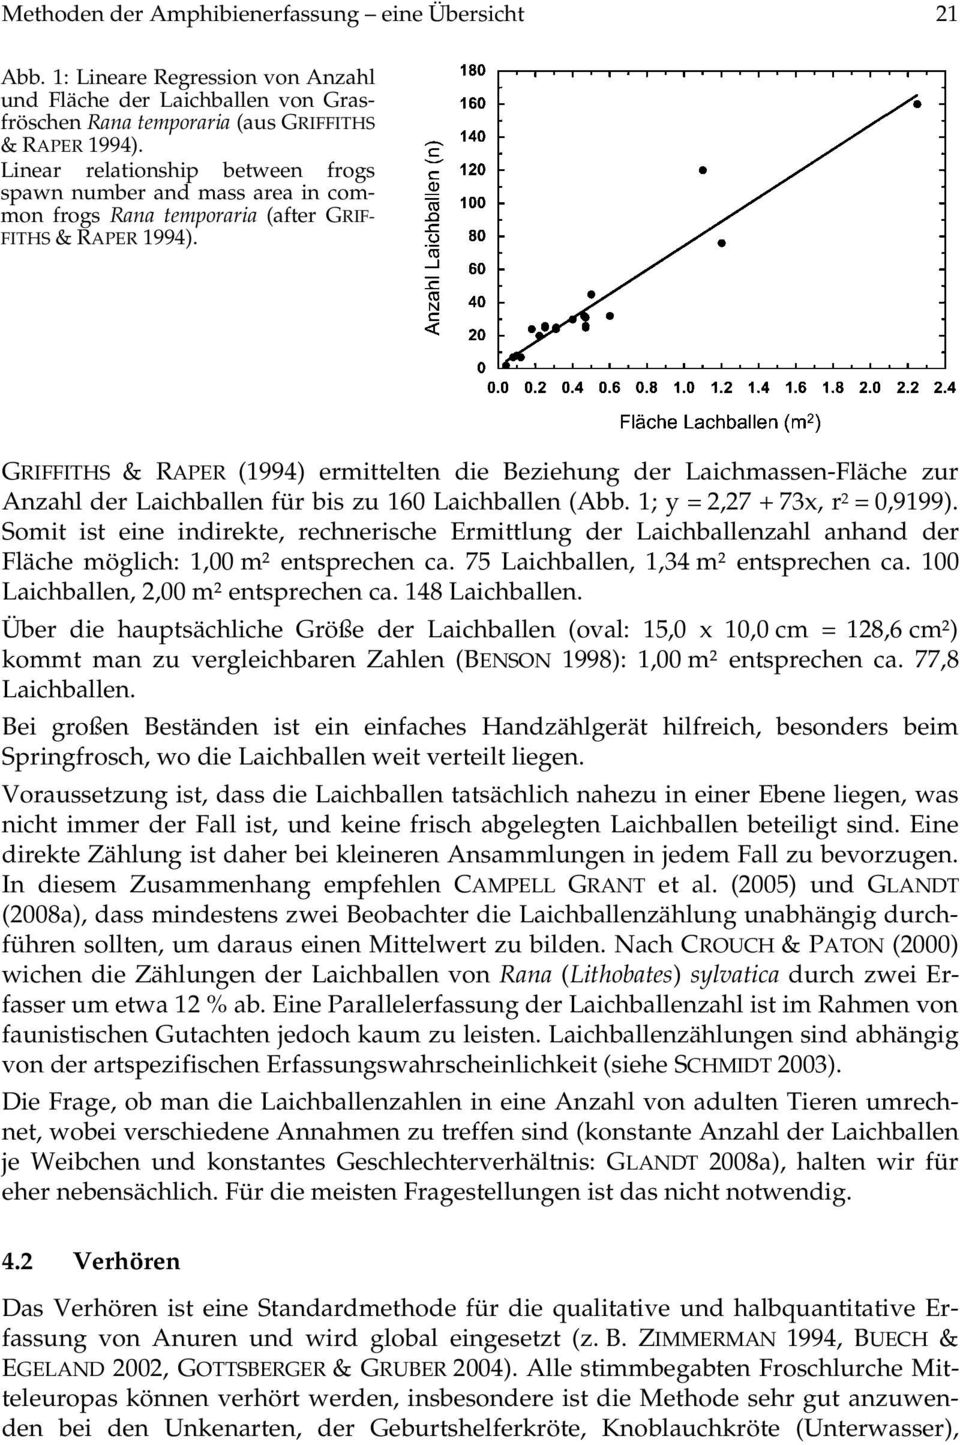 GRIFFITHS & RAPER (1994) ermittelten die Beziehung der Laichmassen-Fläche zur Anzahl der Laichballen für bis zu 160 Laichballen (Abb. 1; y = 2,27 + 73x, r 2 = 0,9199).